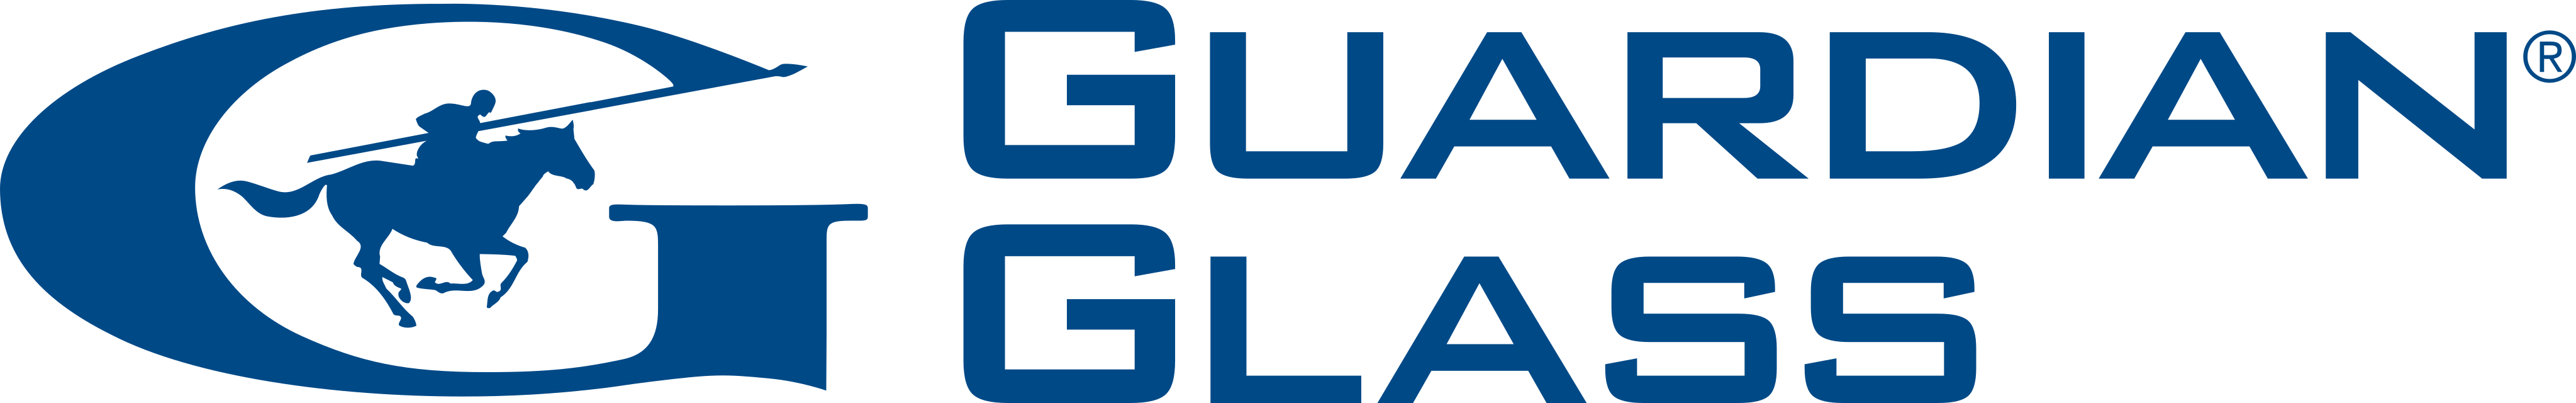 Guardian Logo Vector - cleointeriores